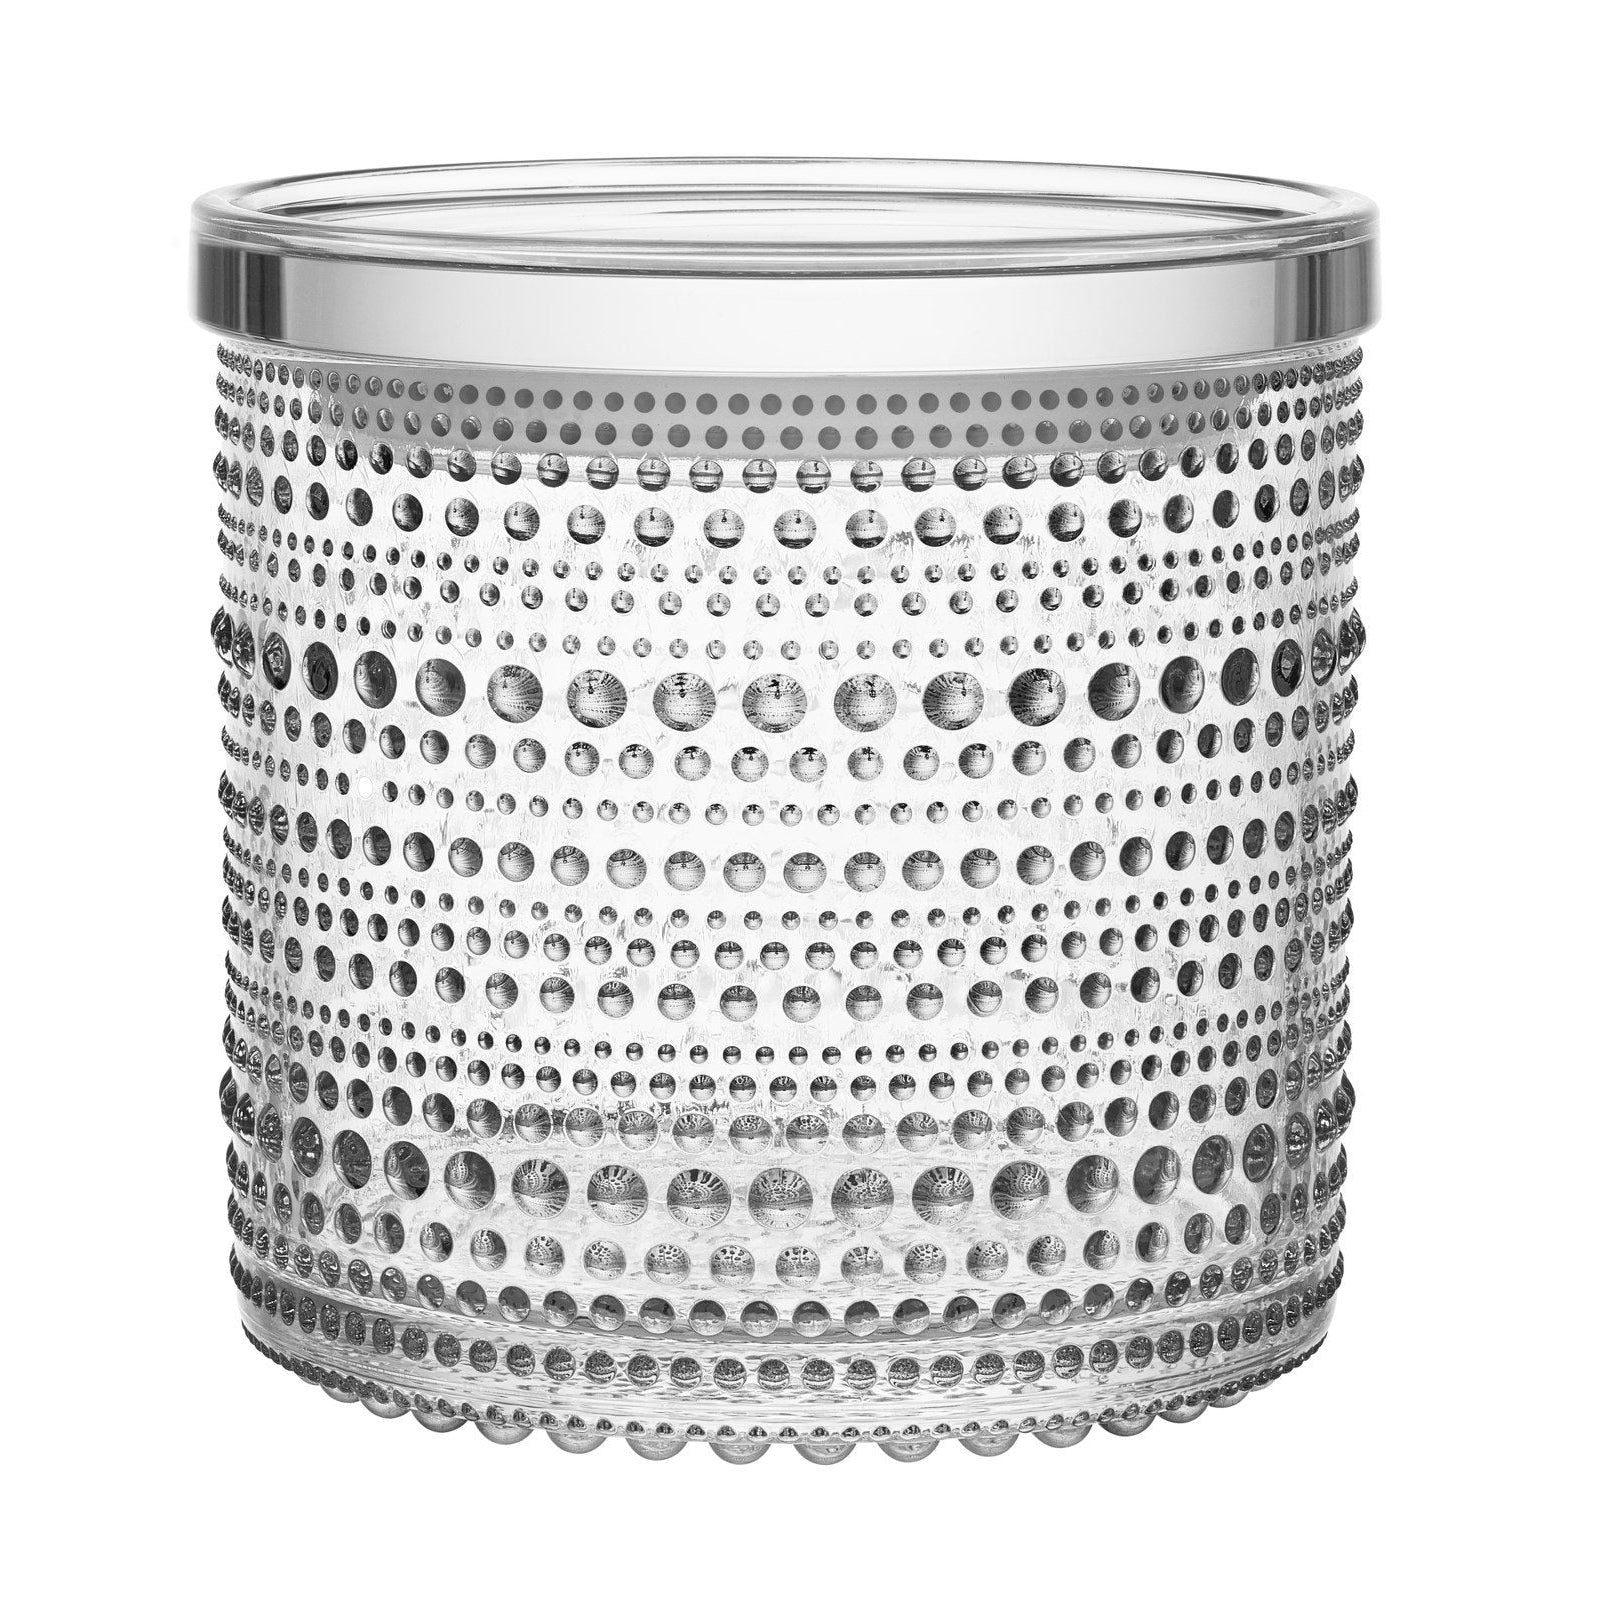 Iittala kastehelmi jar W. coperchio chiaro, 11,6 cm